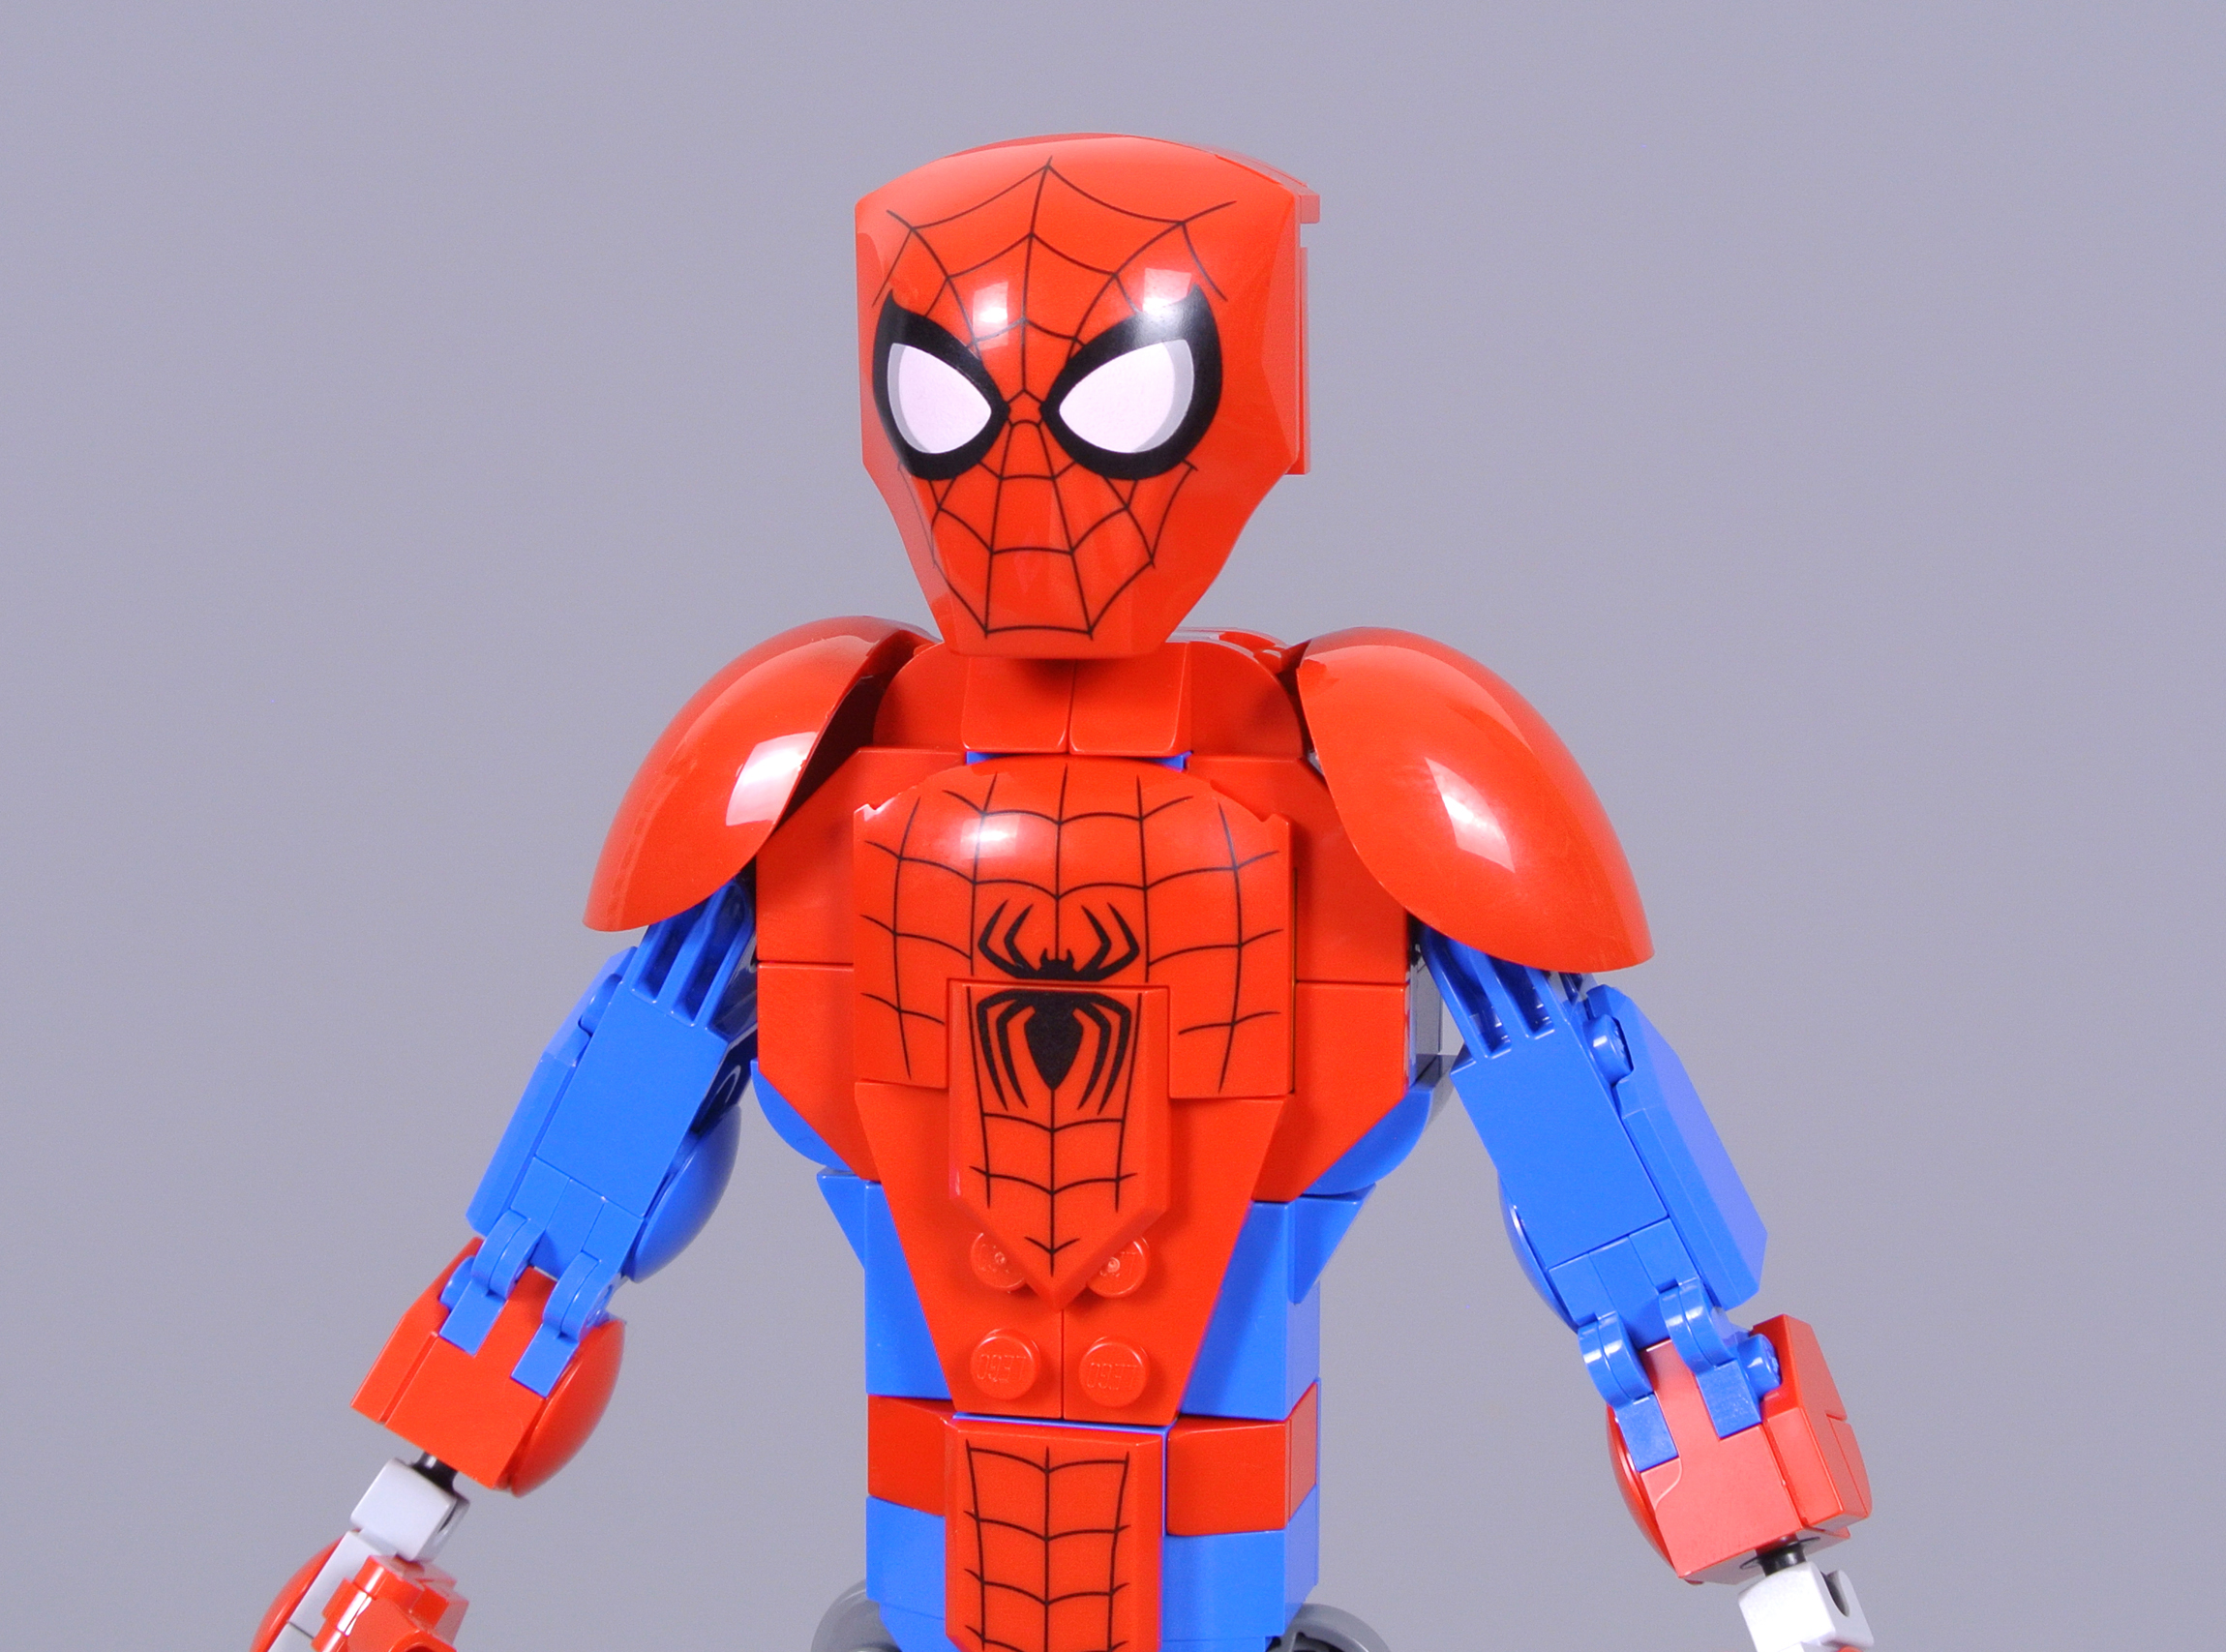 Spider-Man Figure 76226, Spider-Man